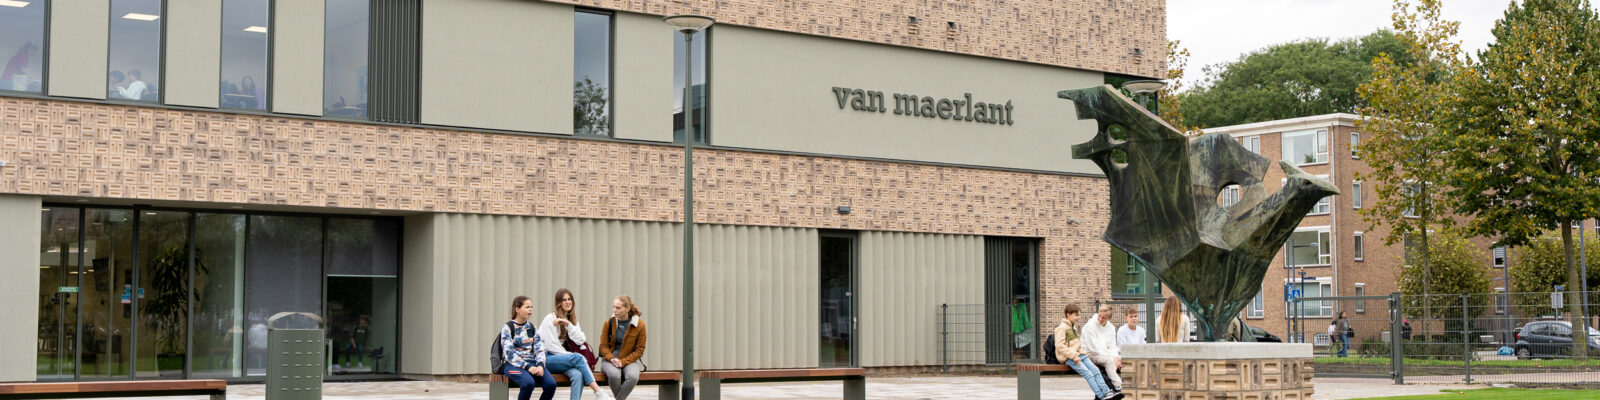 Van Maerlant Den Bosch